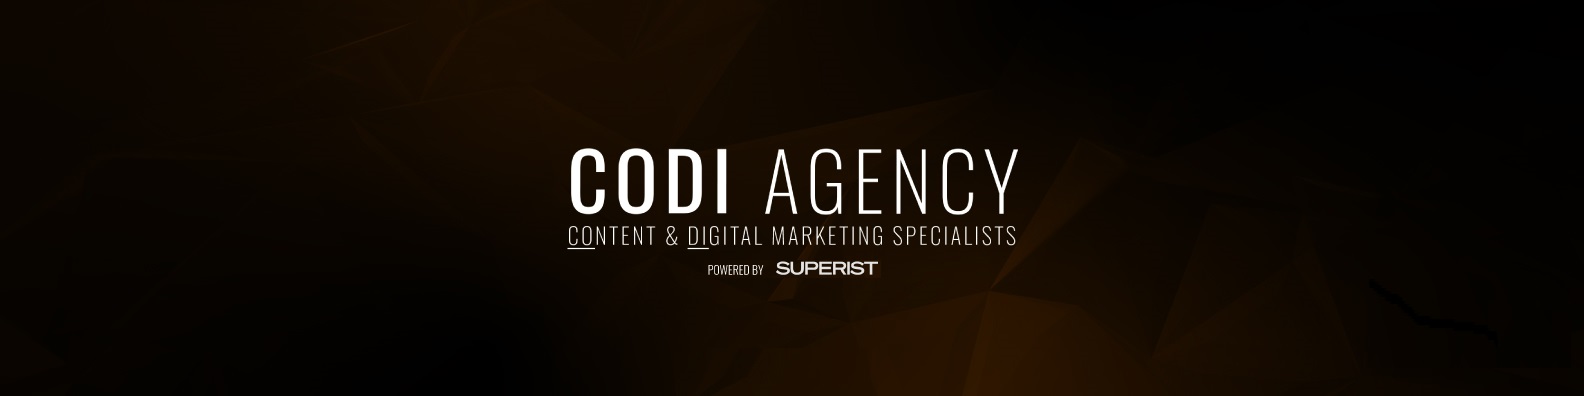 CODI Agency - Cover